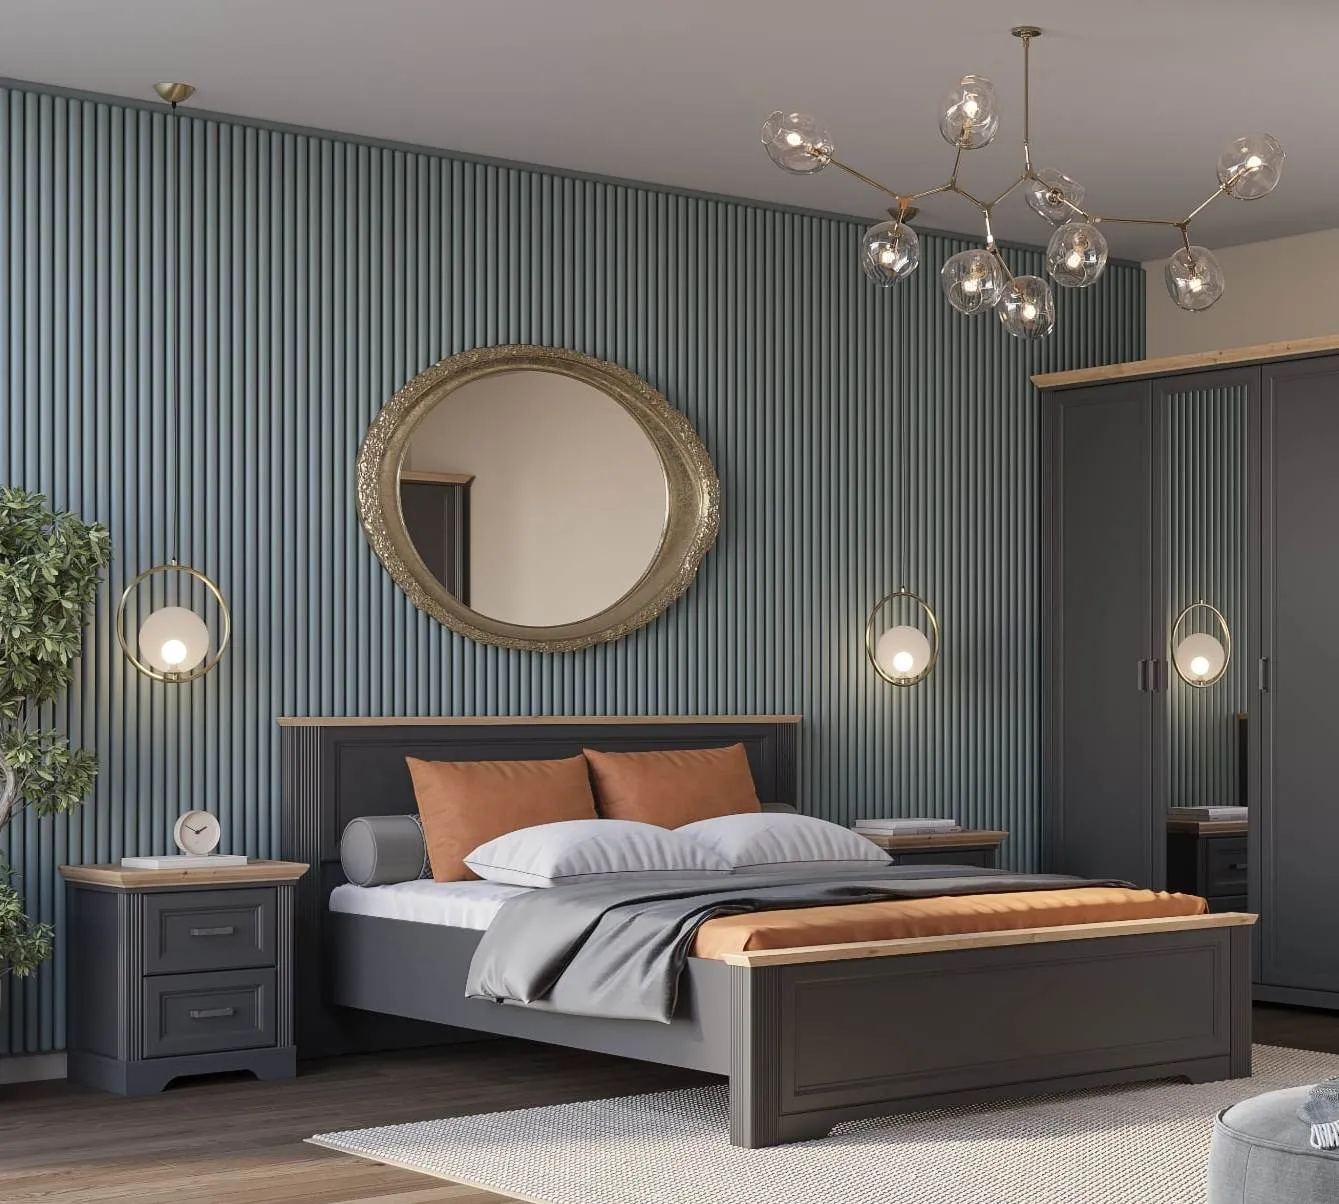 Спальня | Кровати | ЖАСМИН Кровать LOZ160х200 Мебель ☆ IDEA в Севастополе| BRW, Брест anons